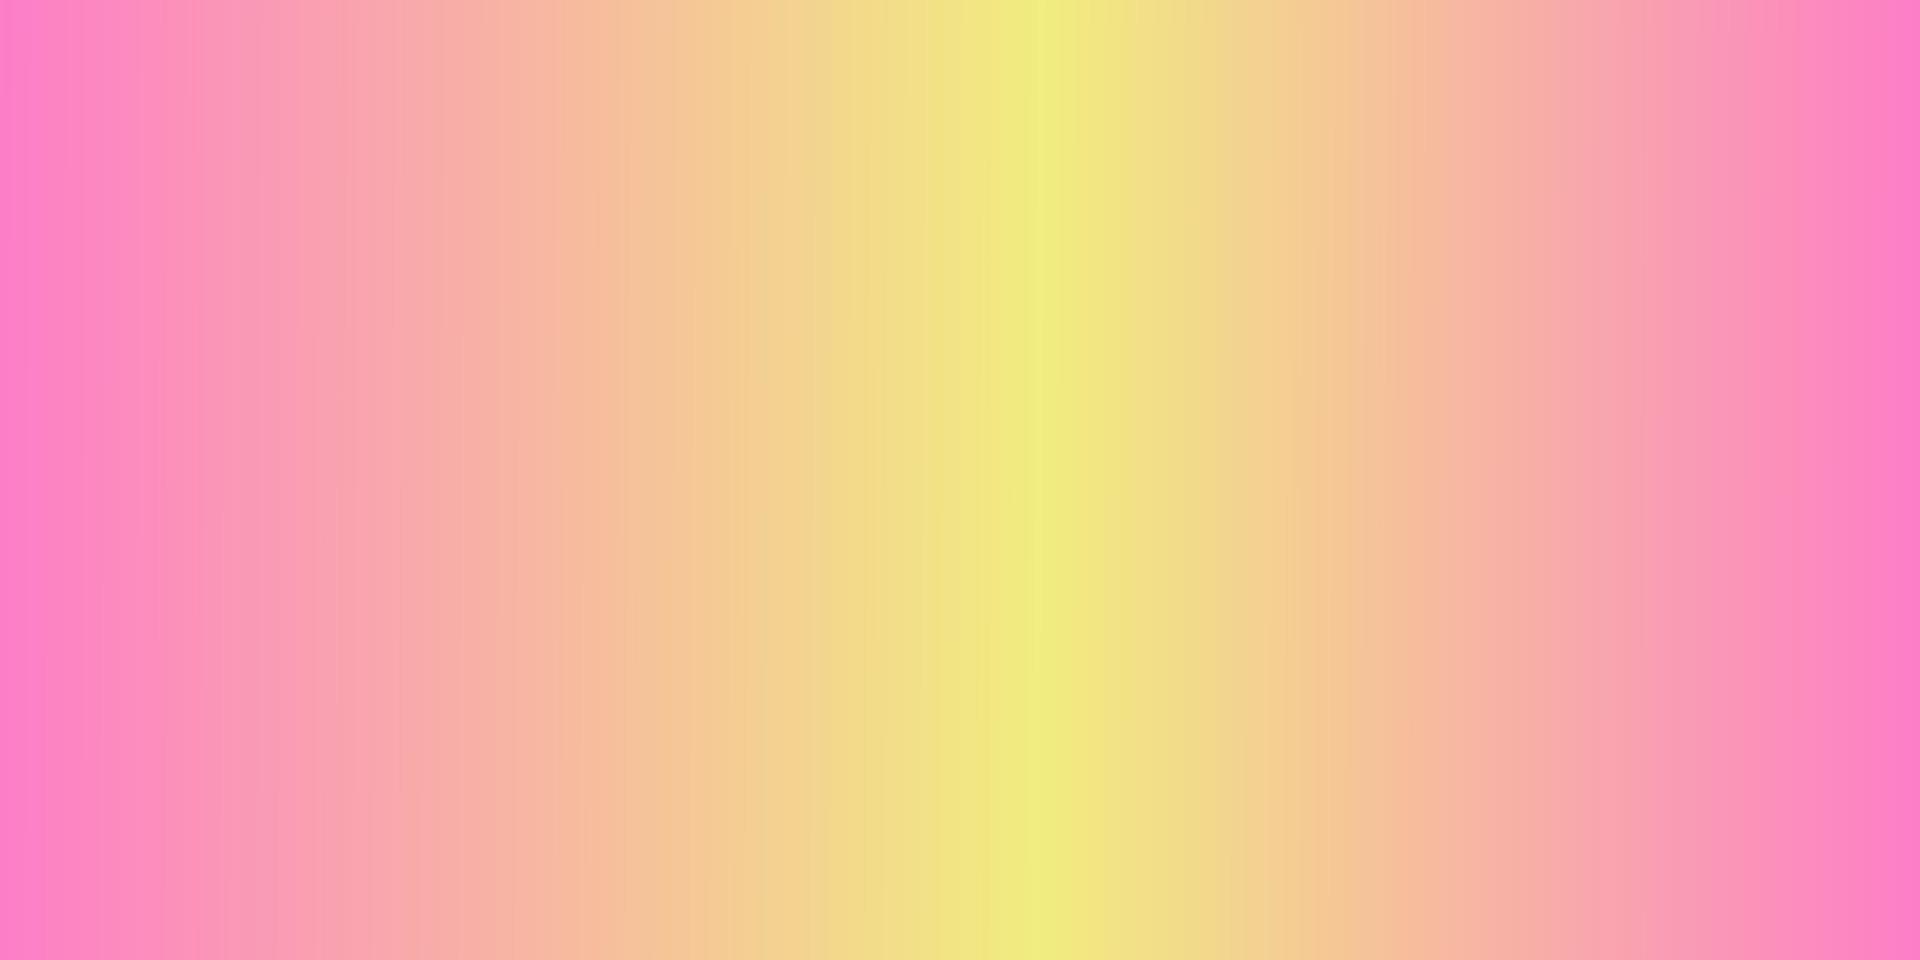 ljus sommargradientbakgrund i rosa, gult, grönt och blått. bra för banner, sociala medier mall, affisch och flyer mall vektor